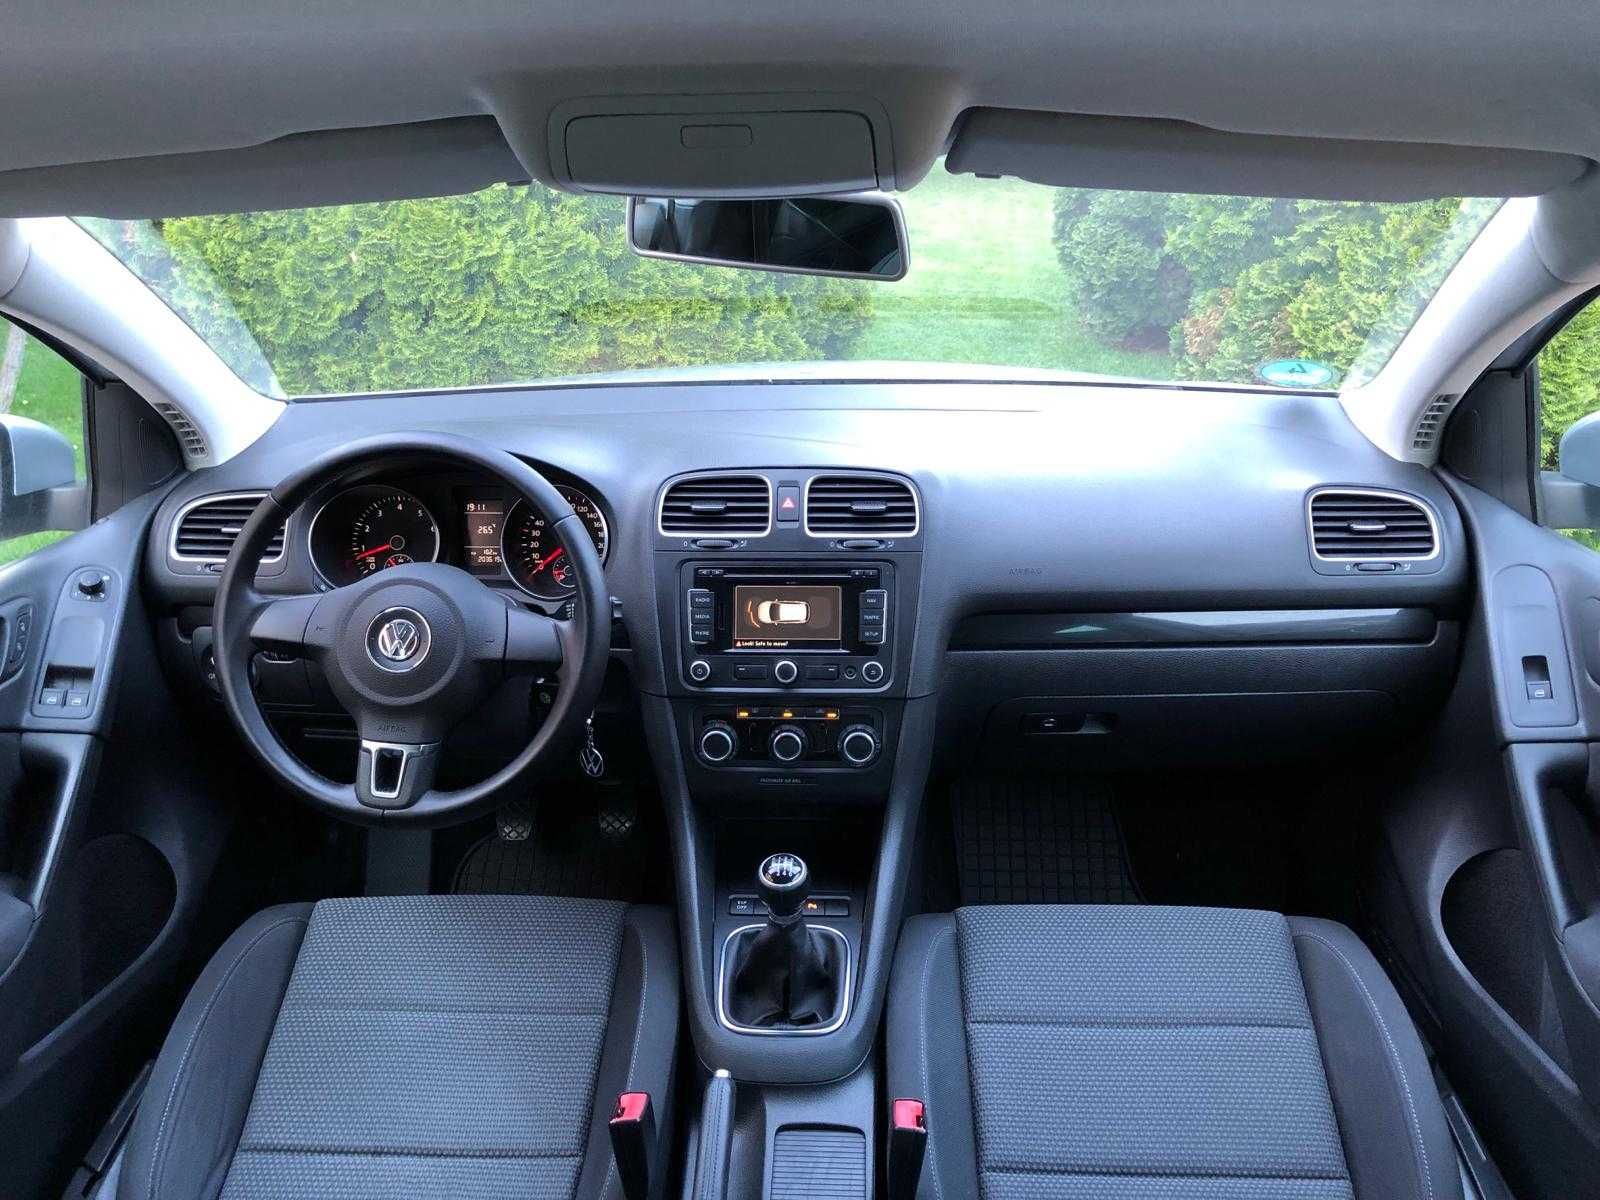 VW Golf 6/1.4 Benzină/122 CP/Euro 5/ An 2010/ Navigație/ Etc.